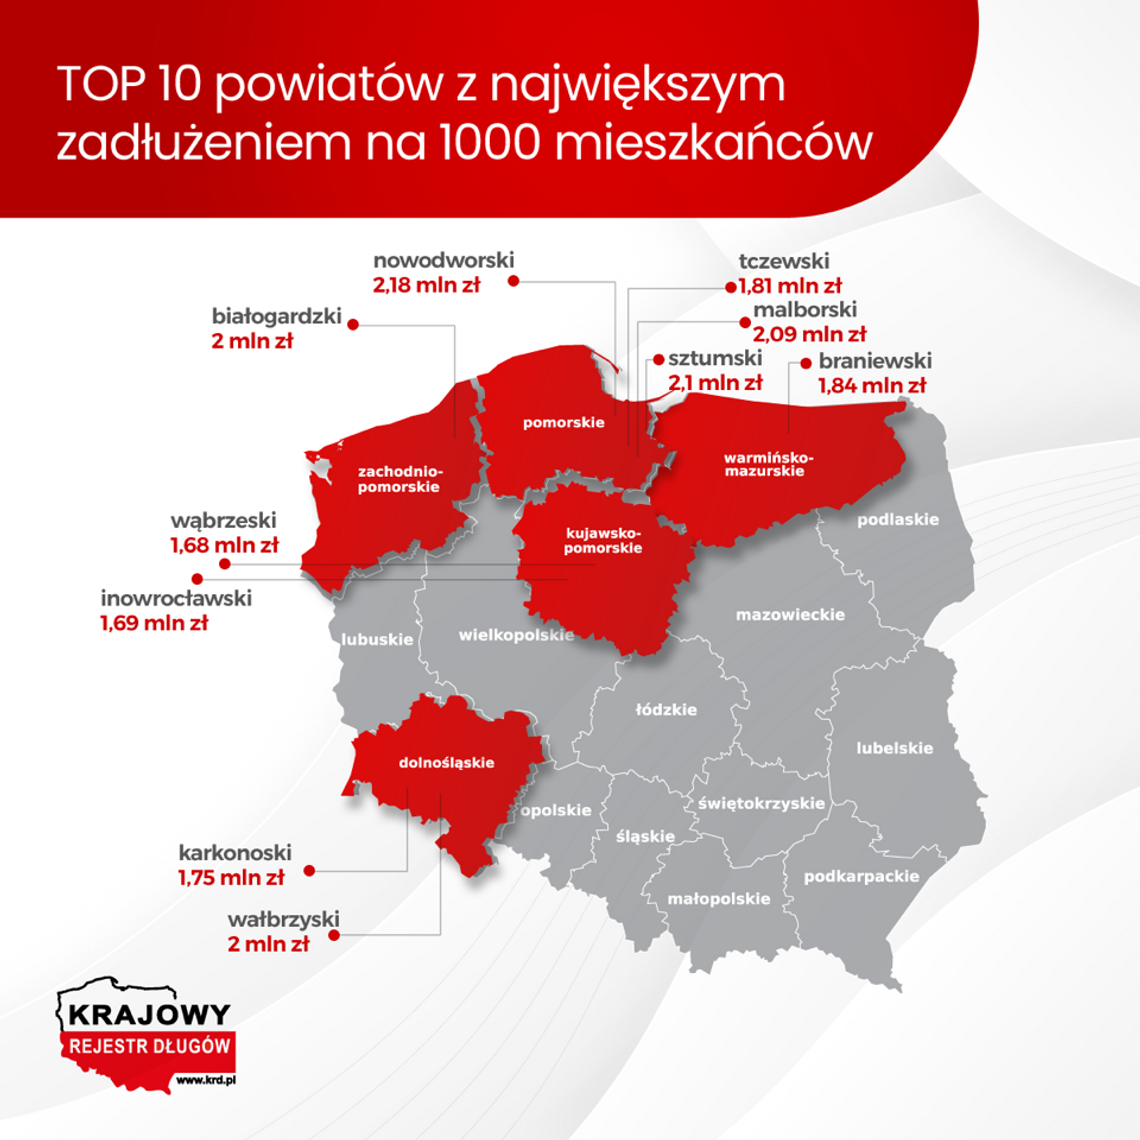 Krajowy Rejestr Długów: w tych powiatach jest największe zadłużenie na 1000 mieszkańców. Powiat sztumski i malborski na 2 i 3 miejscu najbardziej zadłużonych w Polsce